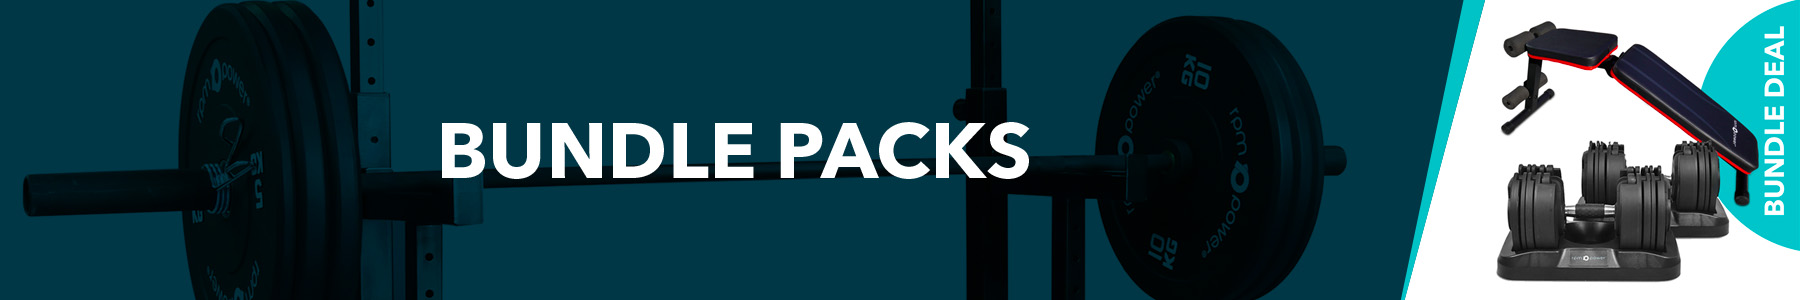 weights bundle packs